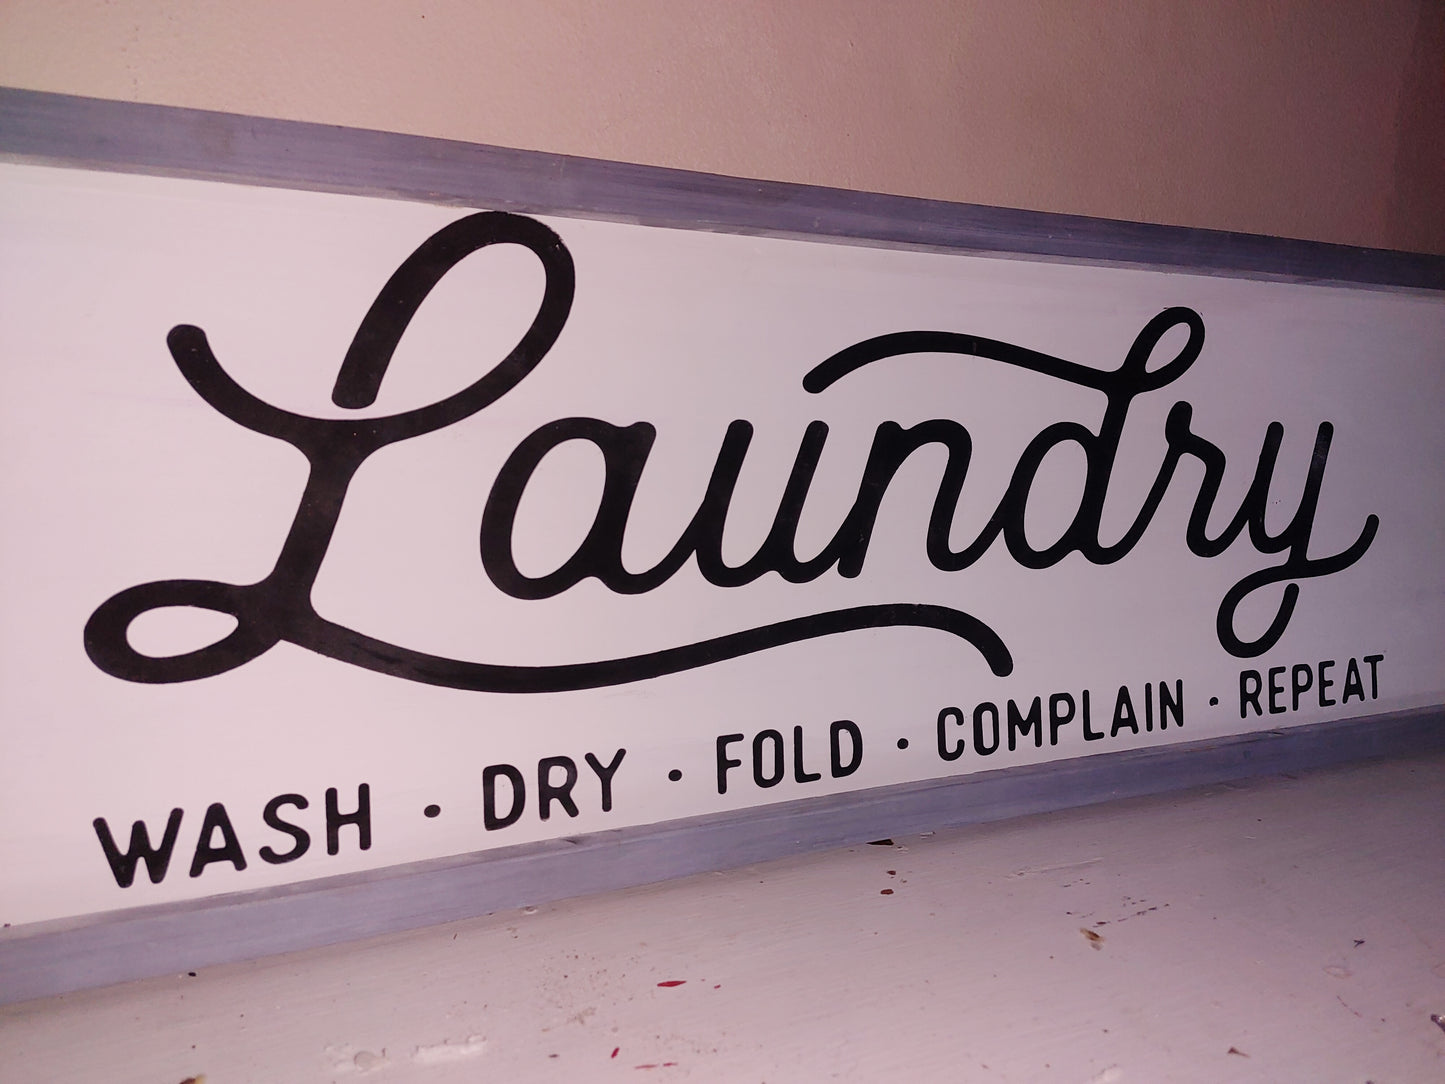 10x36" Large Laundry Sign